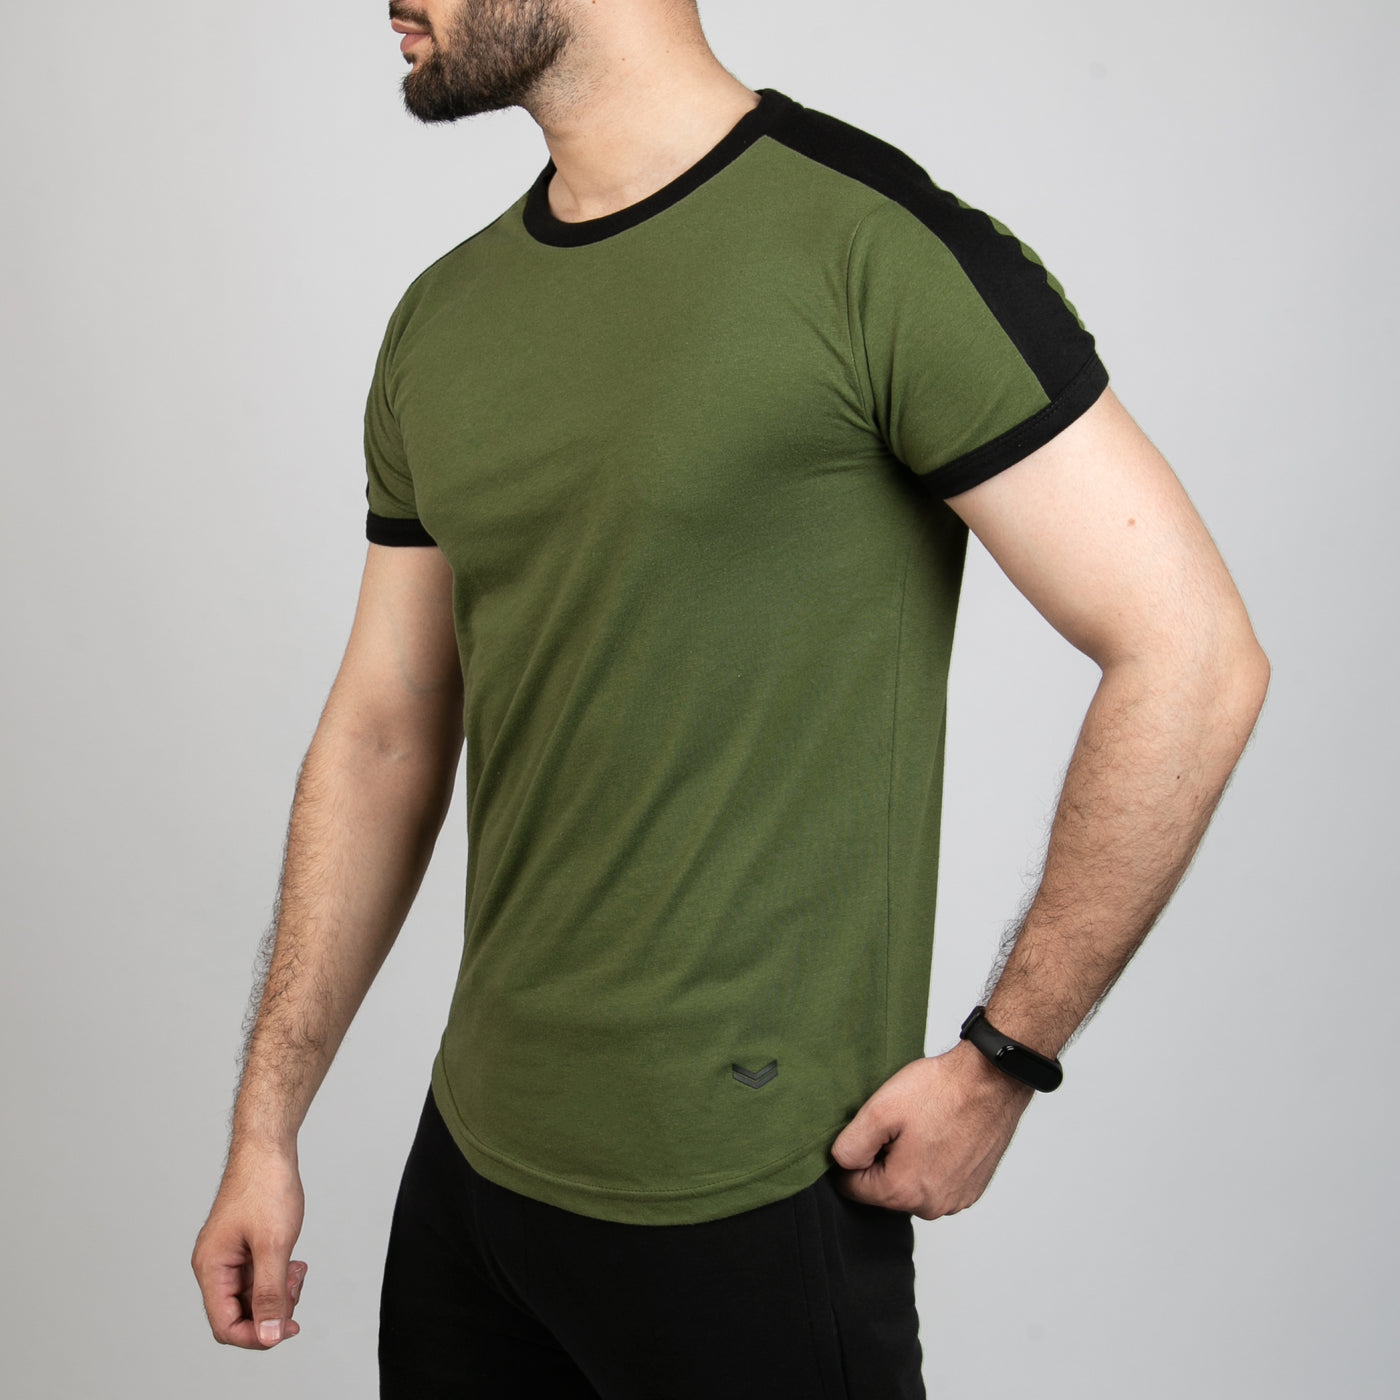 Olive Ringer T-Shirt with Shoulder Panel